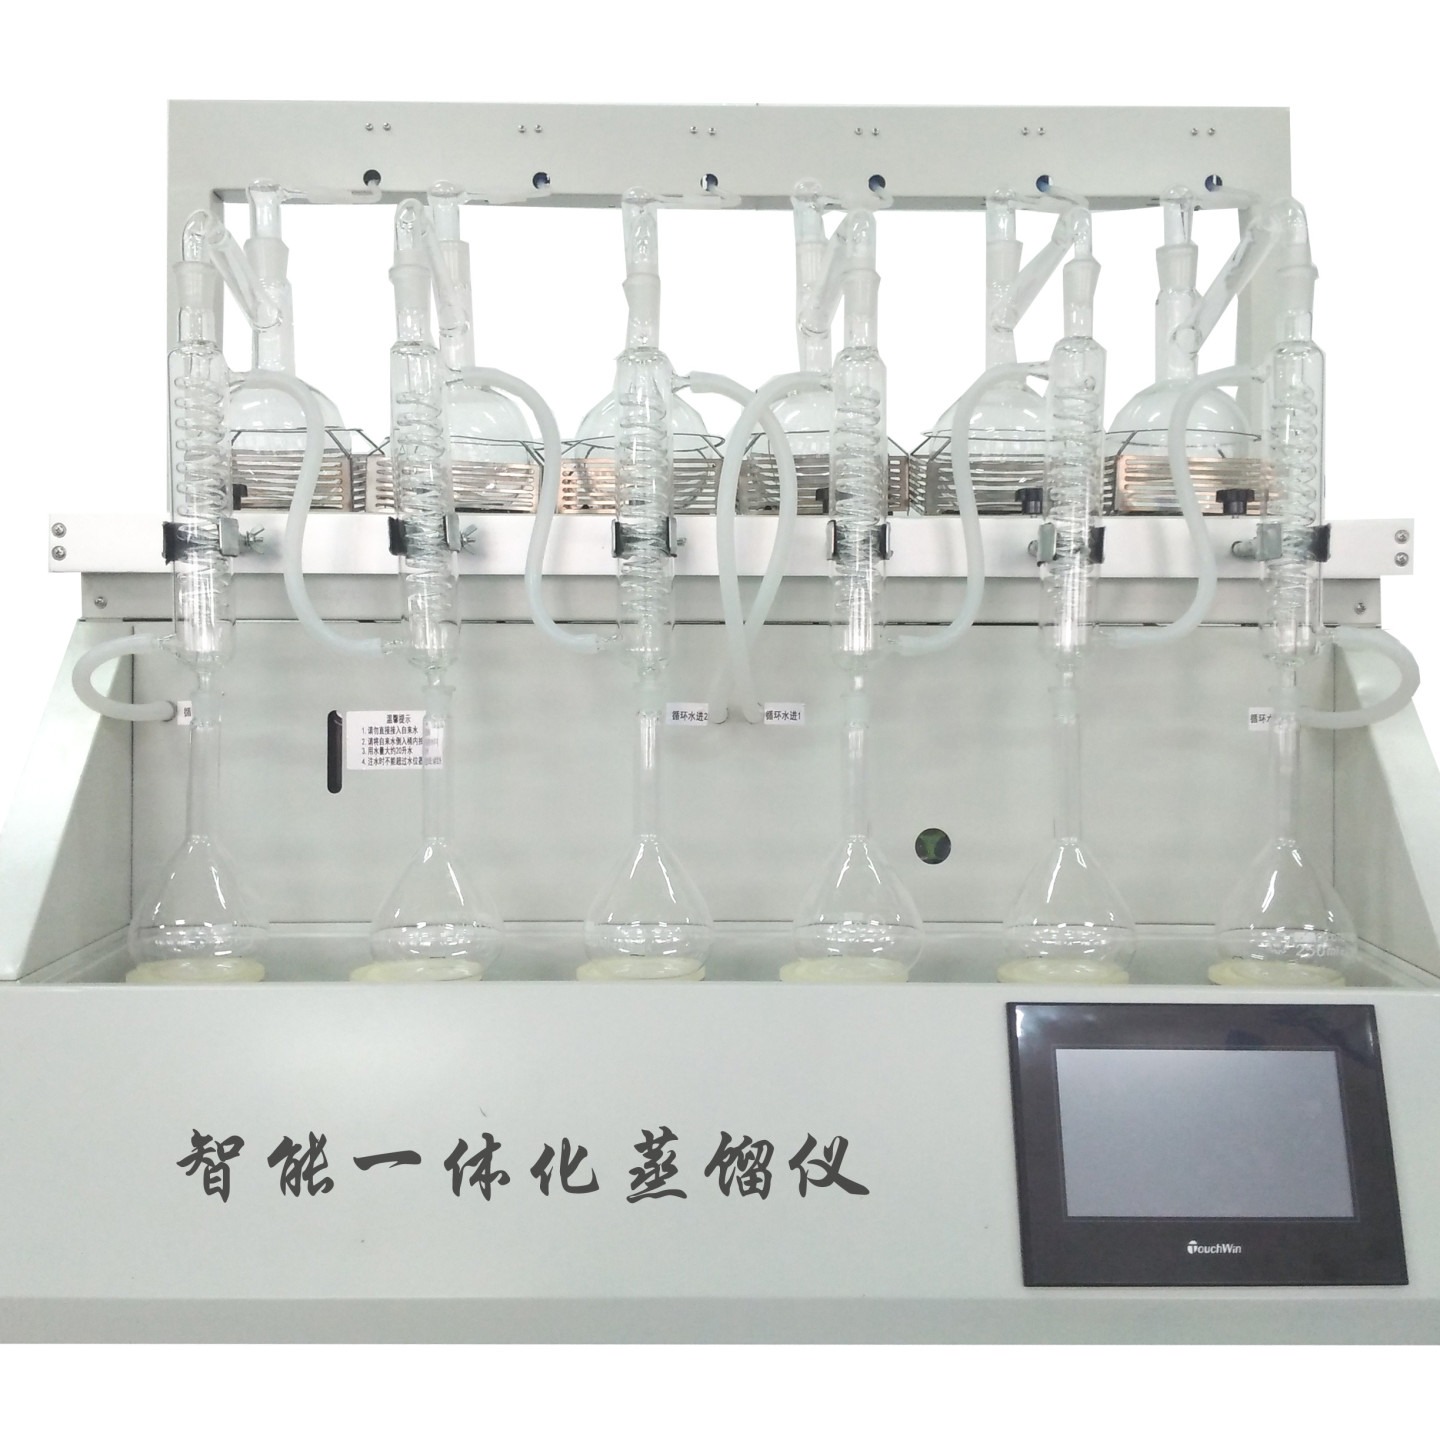 全自动一体化蒸馏仪   CYZL-6 一体化智能蒸馏装置 多功能一体化蒸馏仪